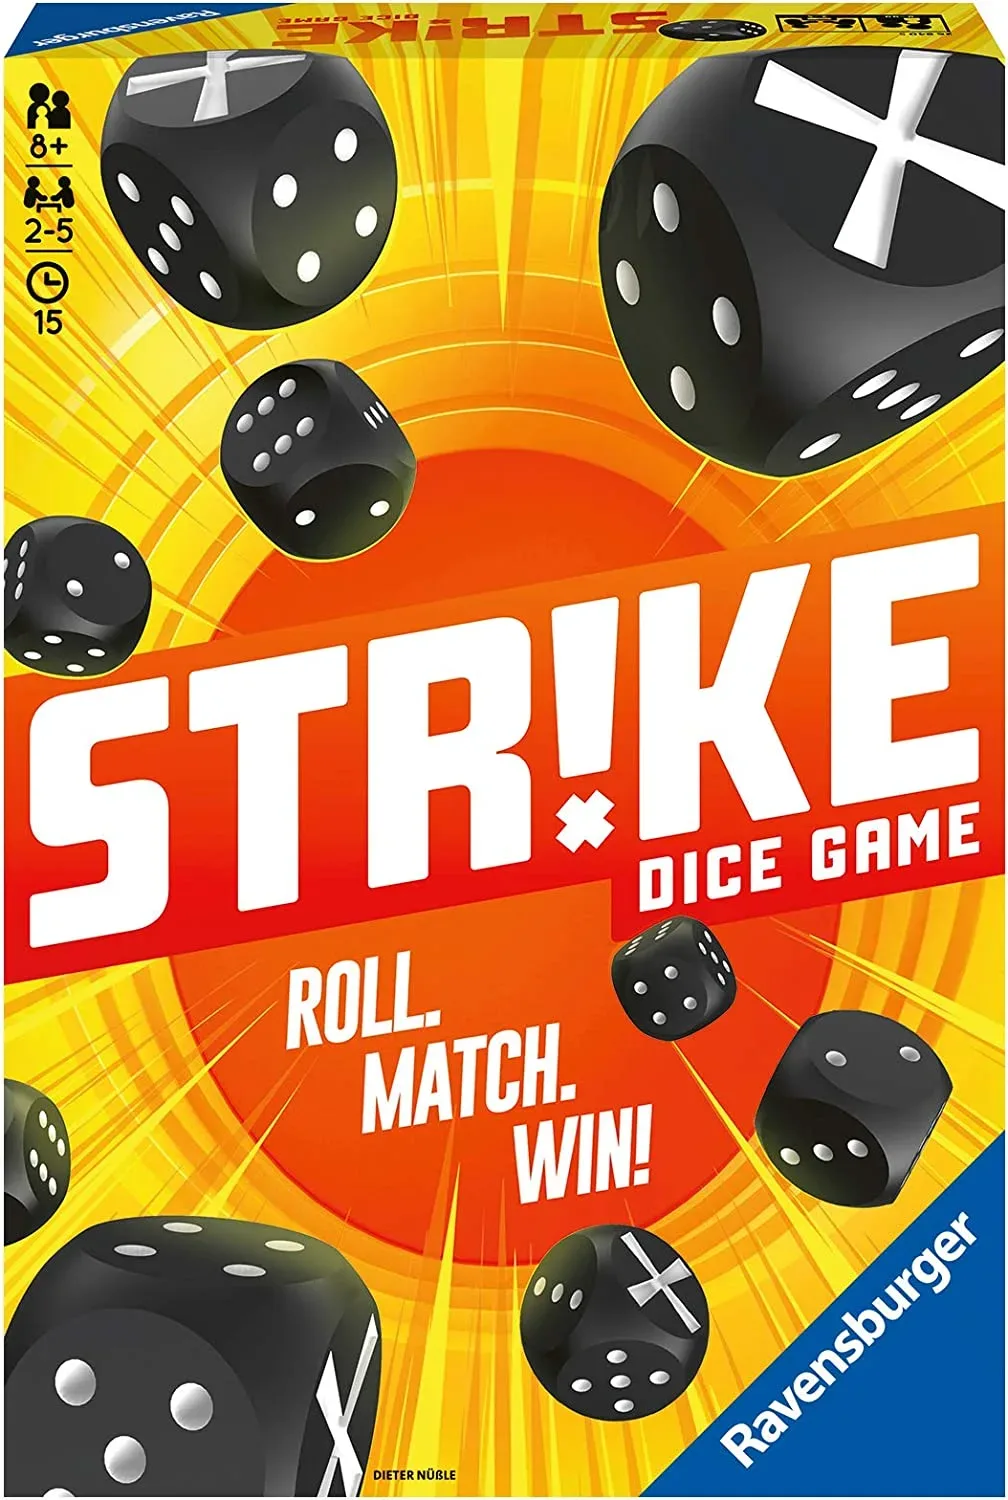 Ver categoría de strike dice game